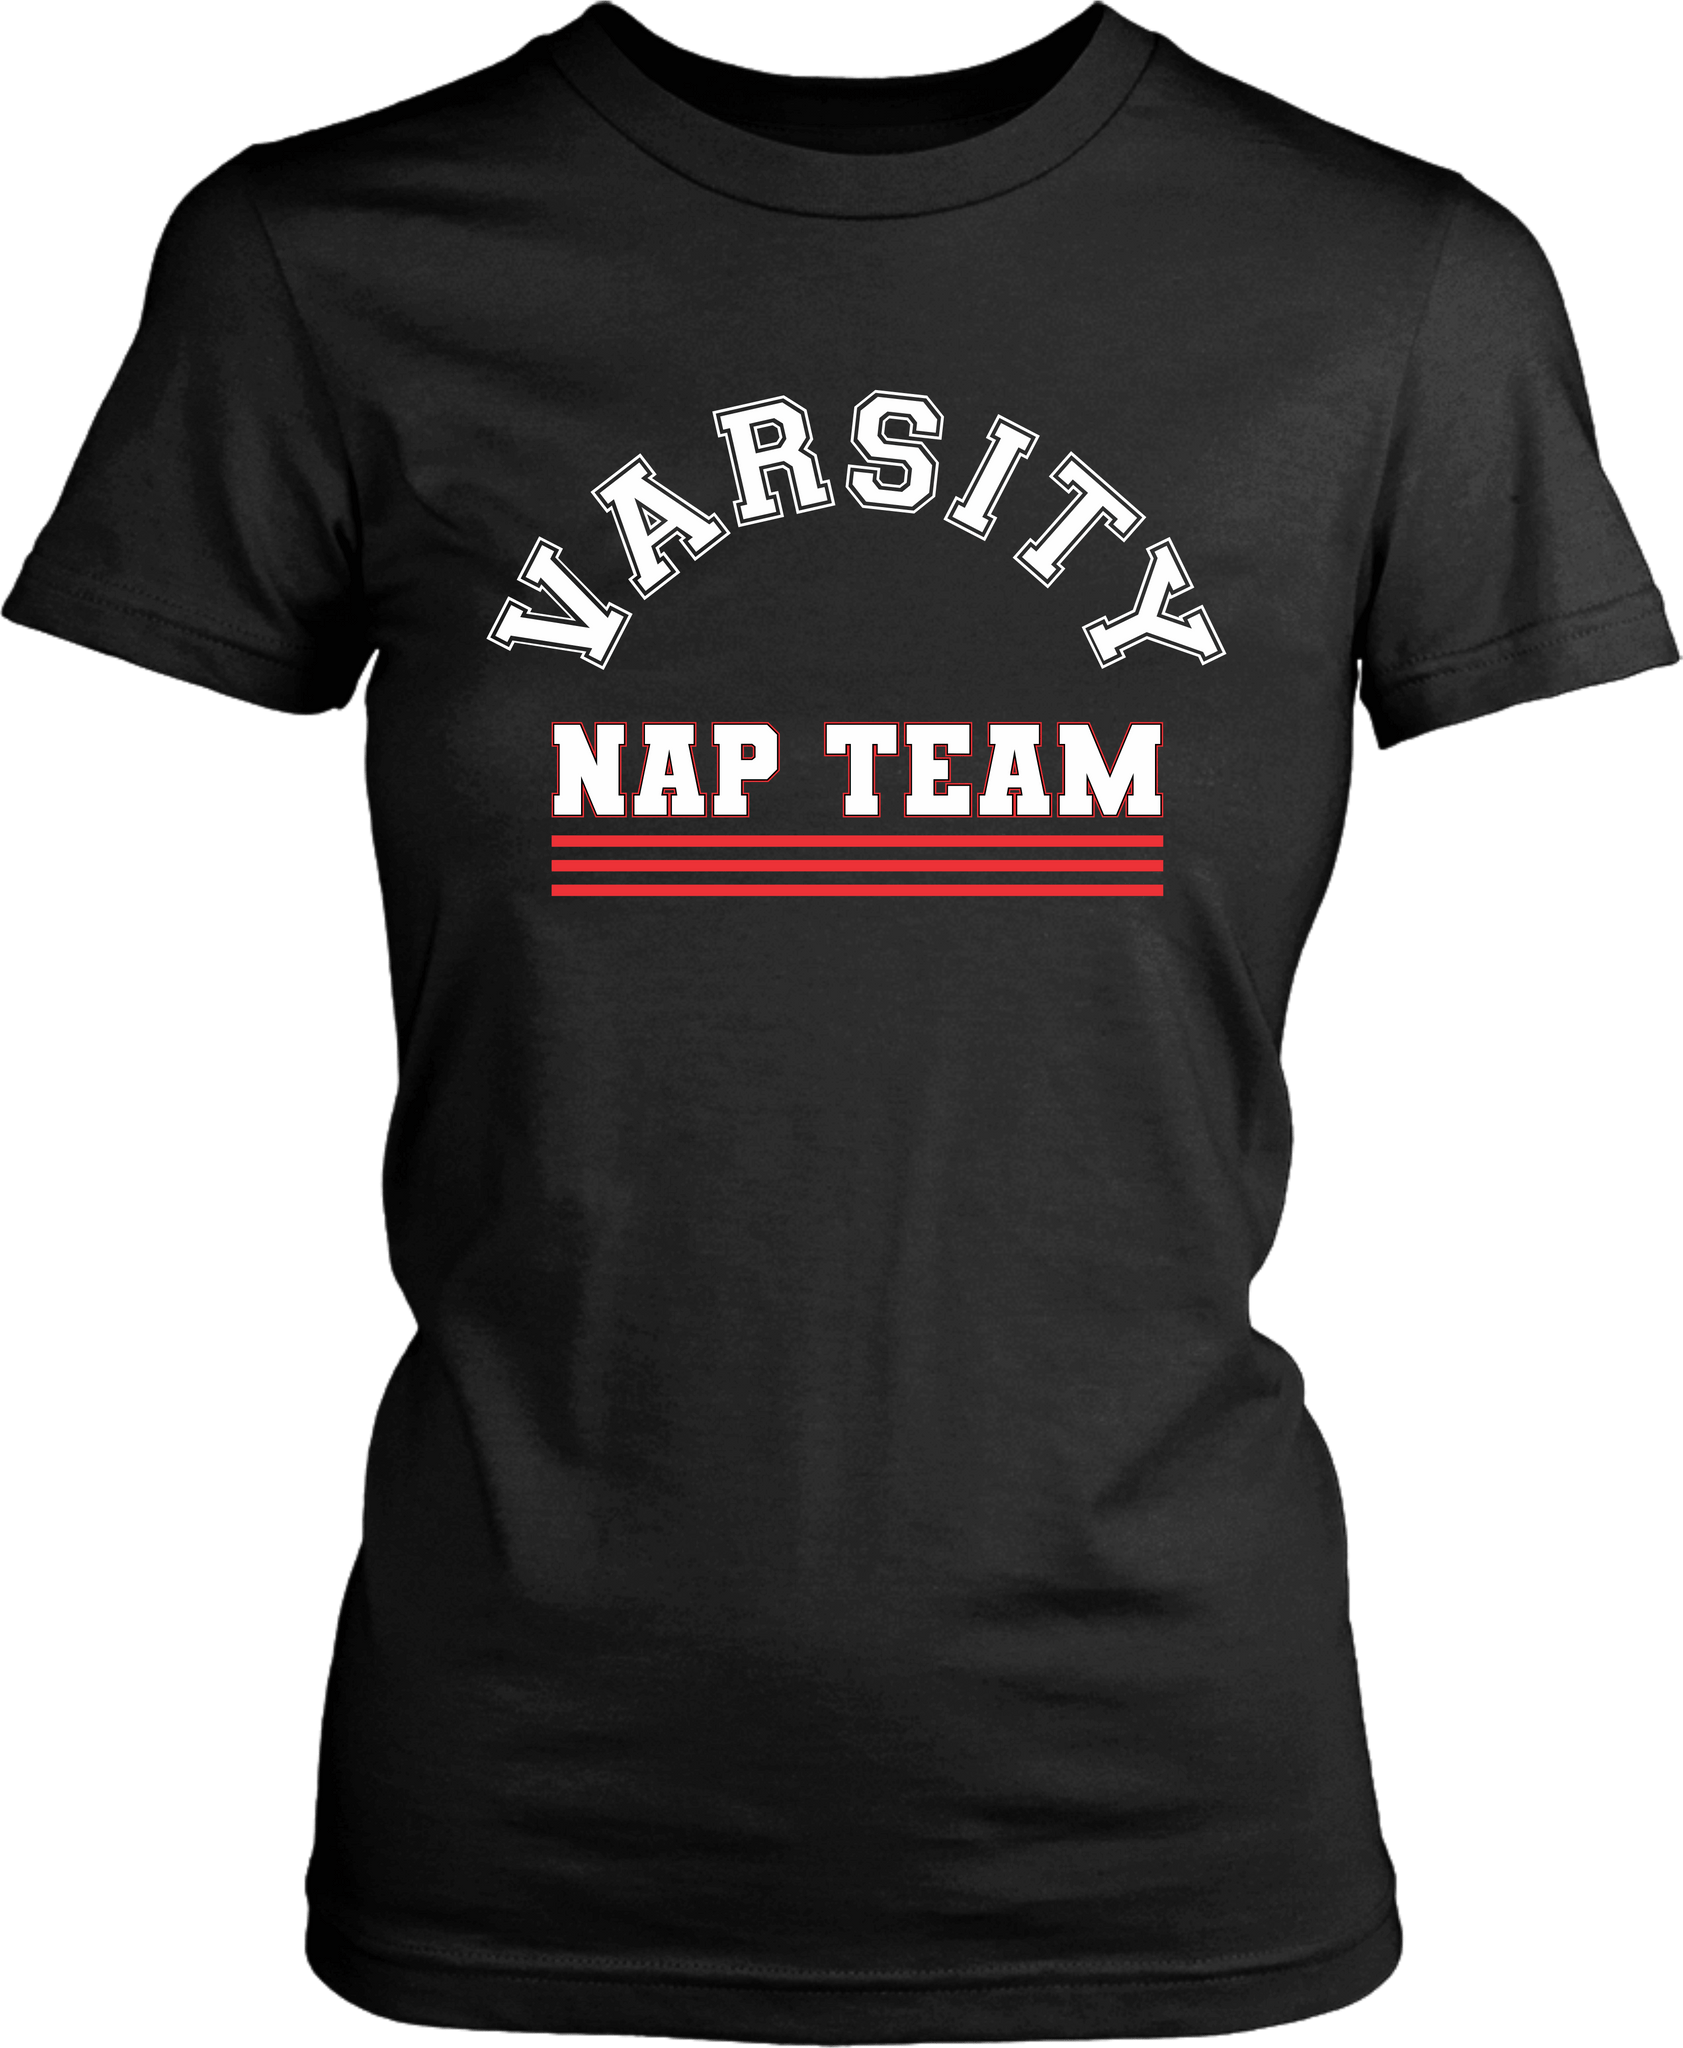 Varsity Nap Team T-shirt Design